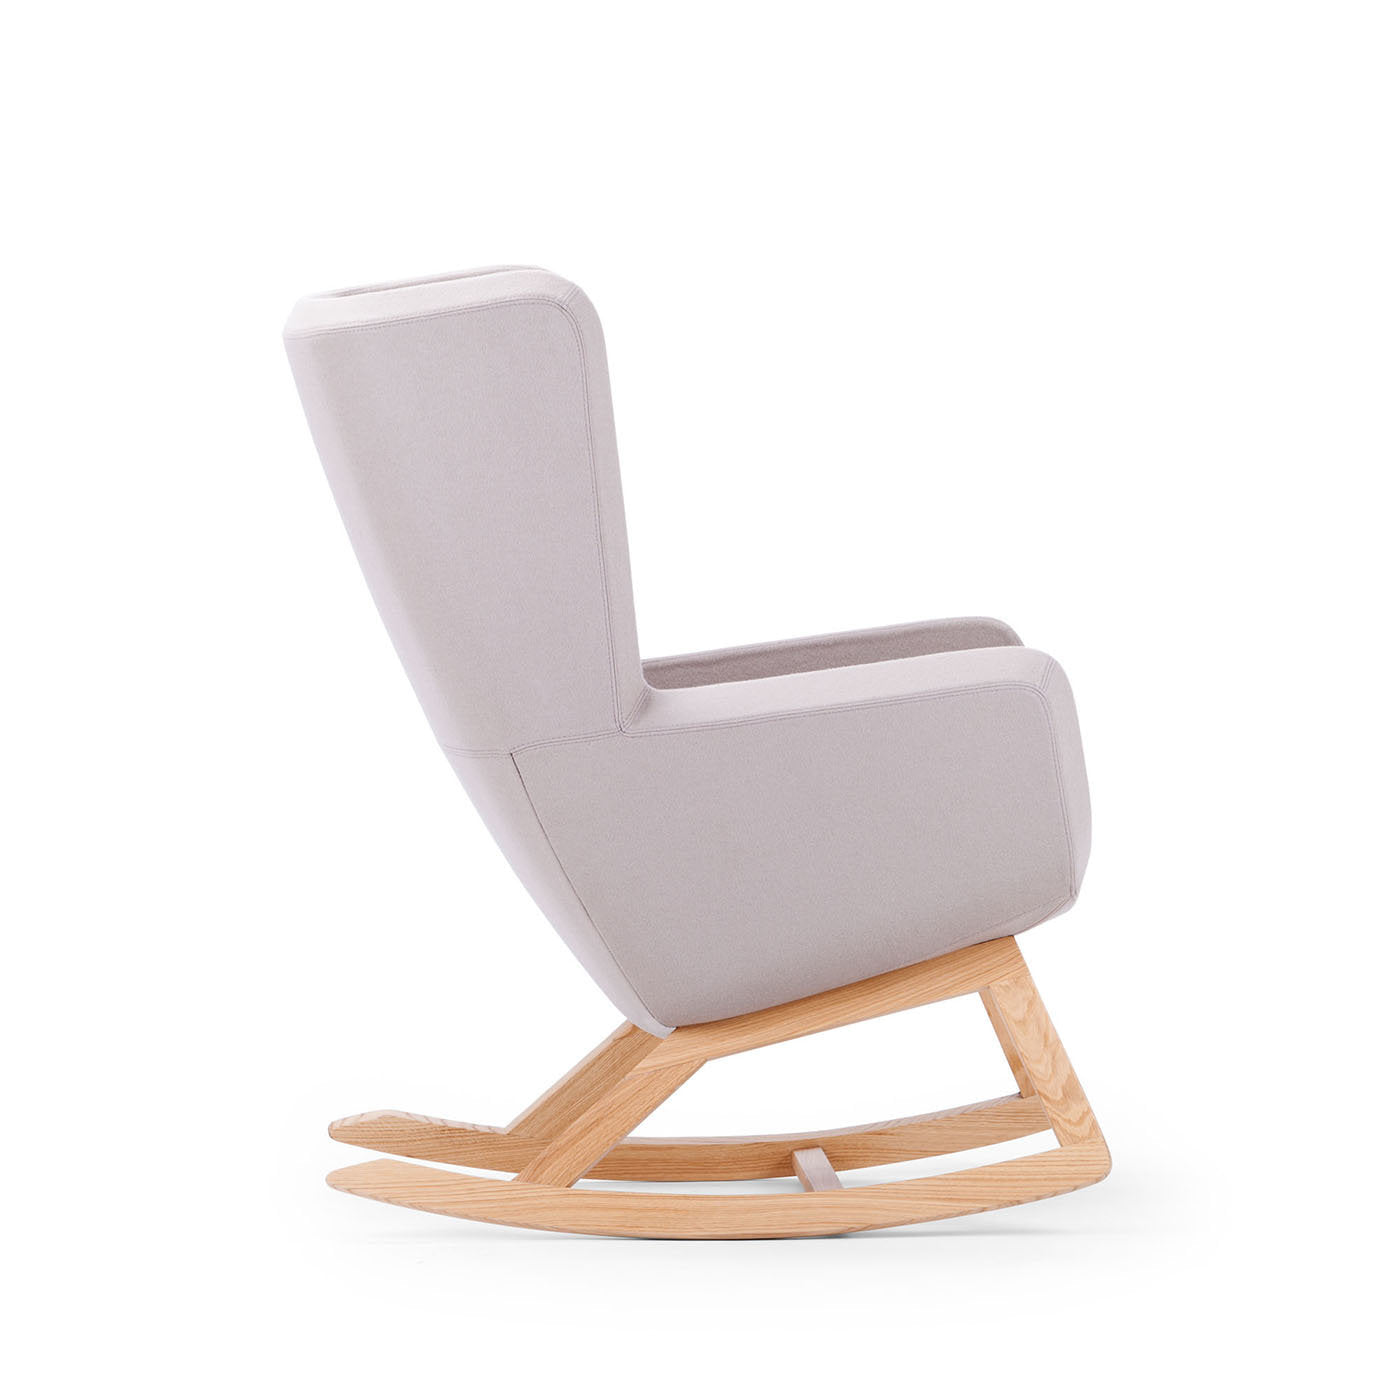 Arca Beige Rocking Chair - Alternative view 1